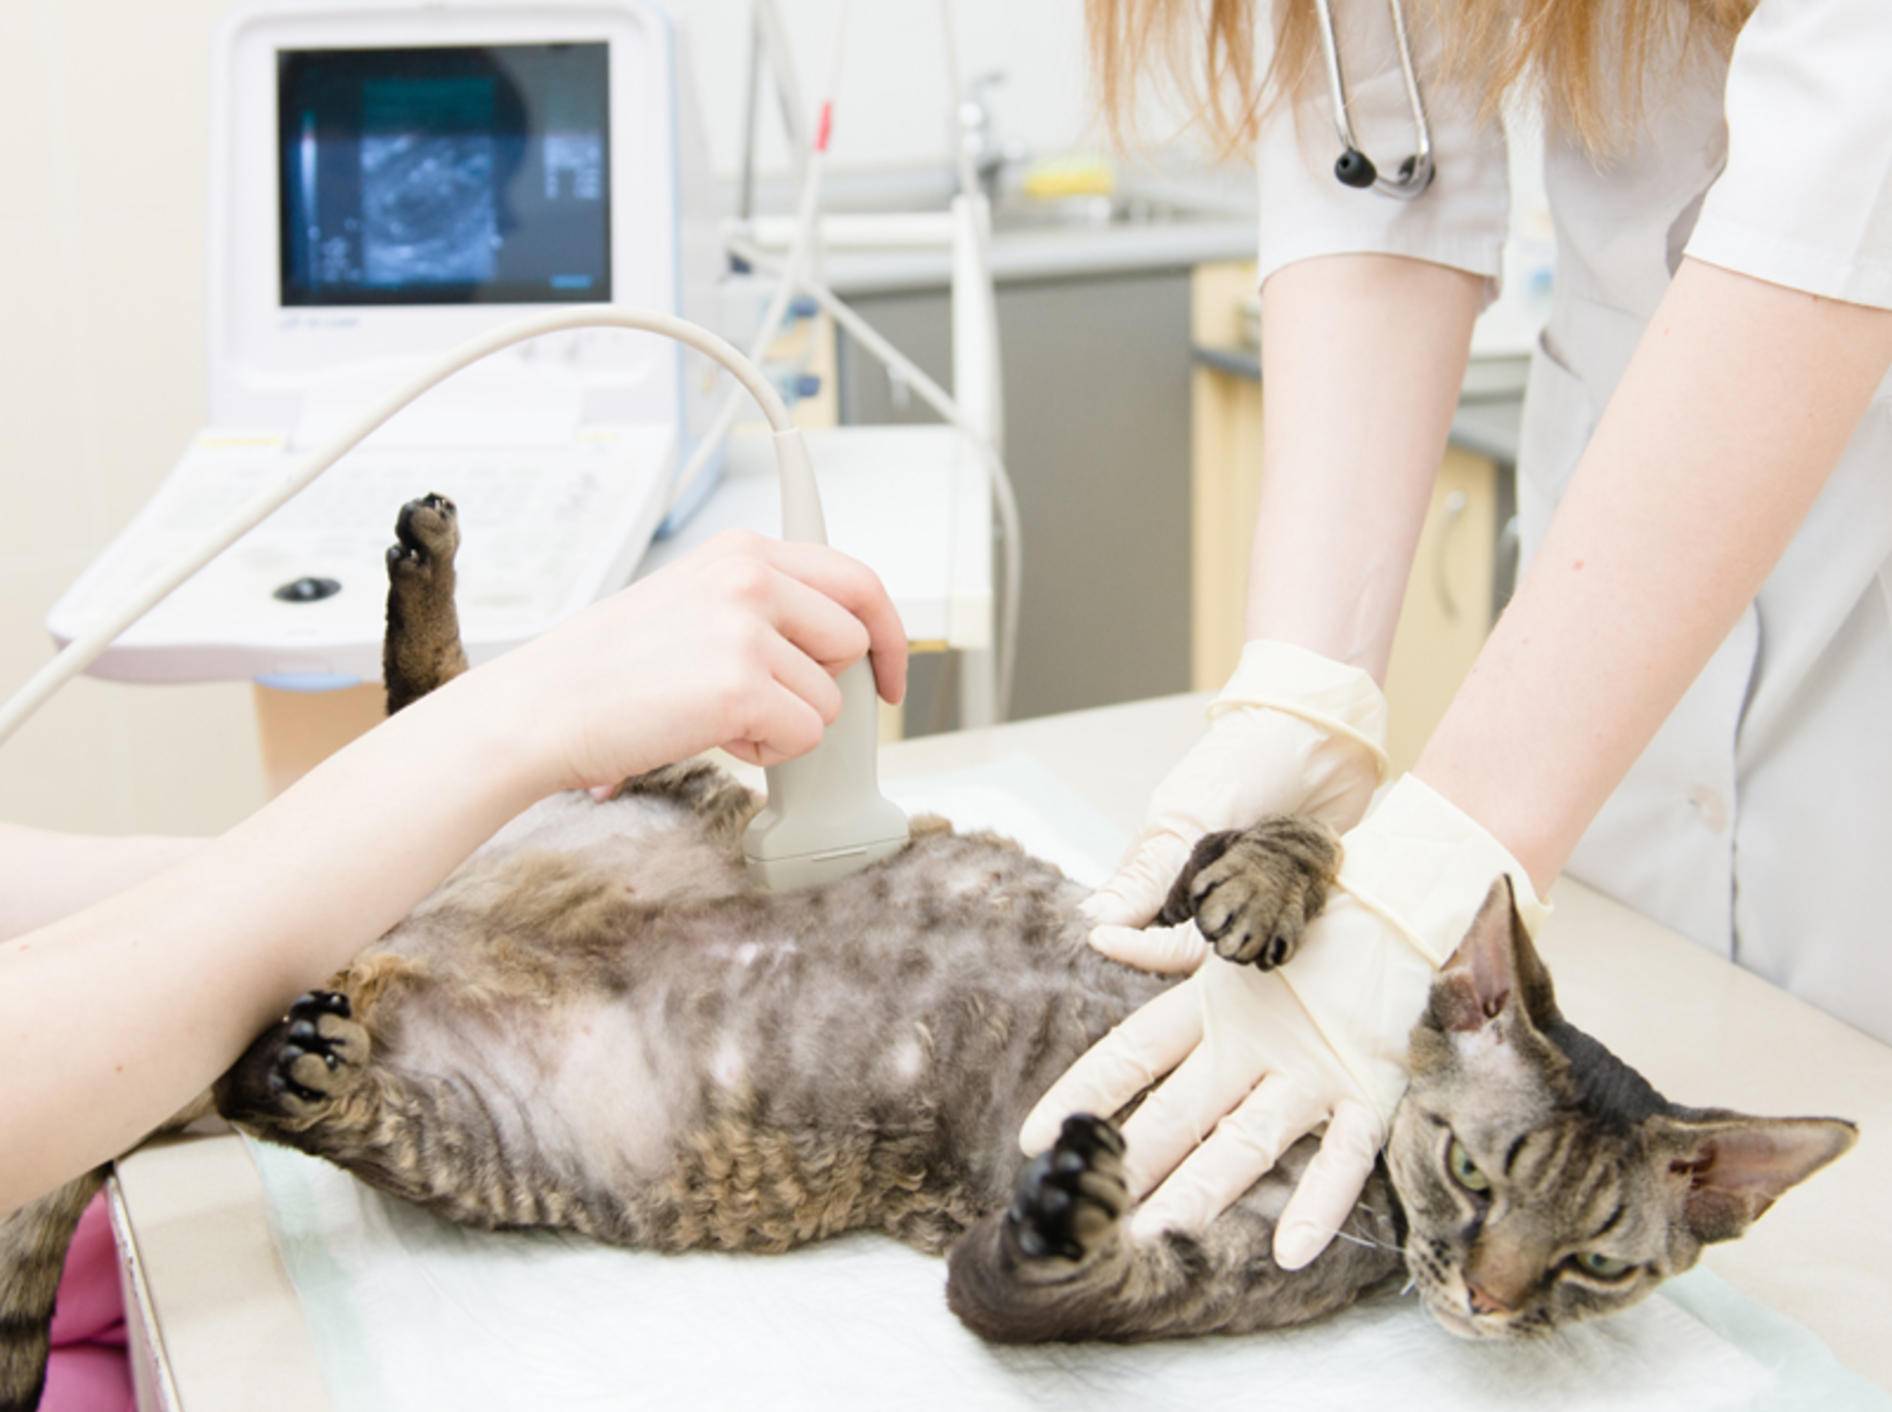 Um sicher erkennen zu können, ob eine Katze trächtig ist, verwendet der Tierarzt einen Ultraschall – Bild: Shutterstock / Ermolaev Alexander